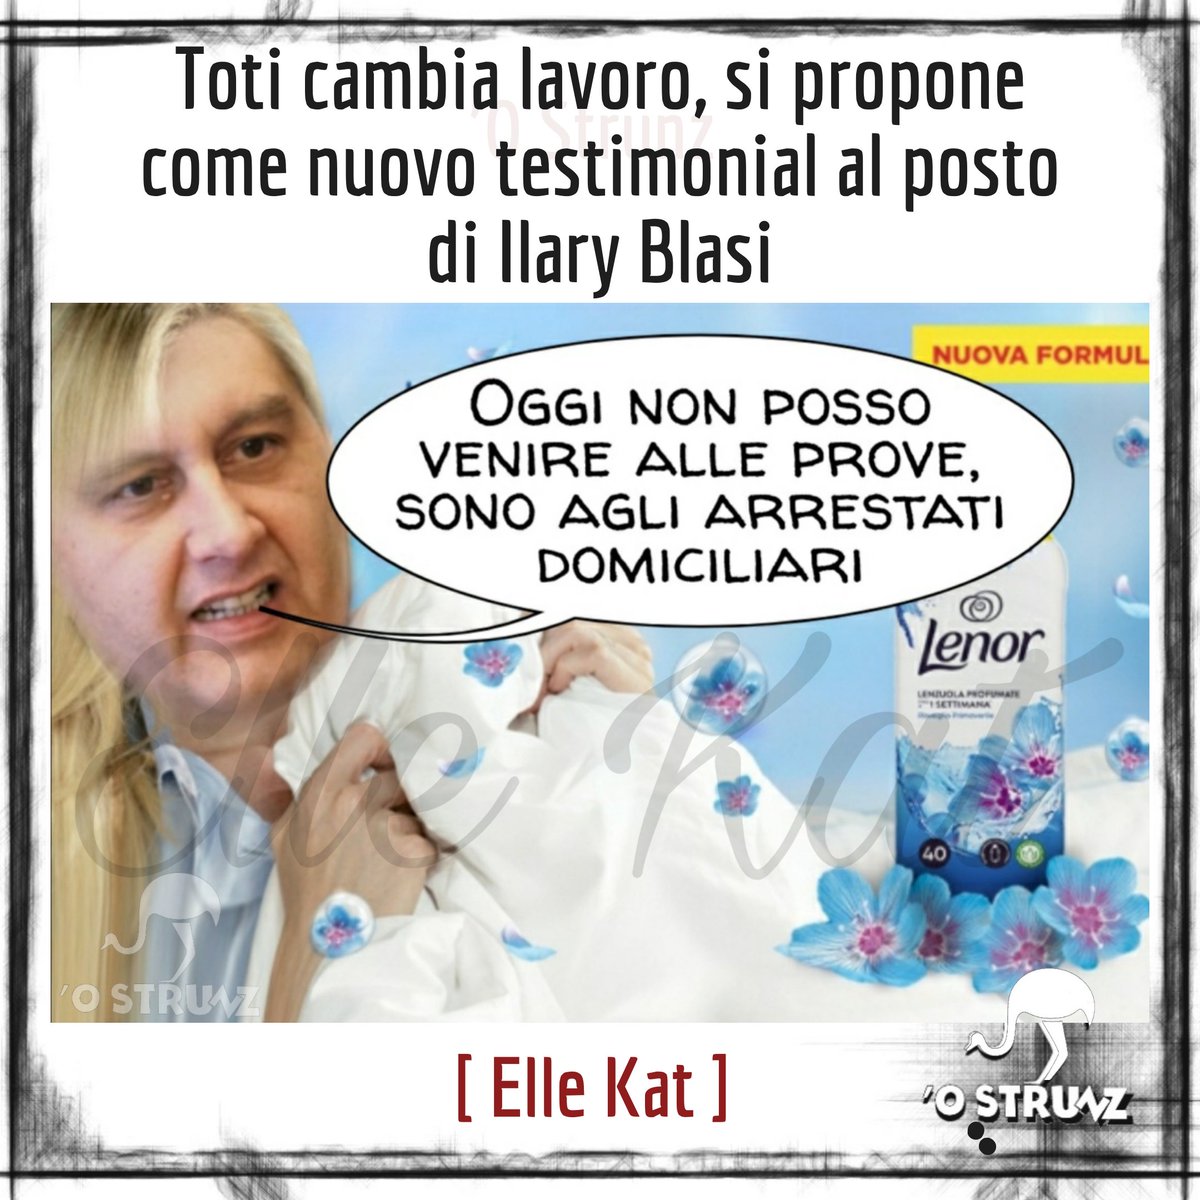 (Elle Kat @ElleKat72) #14maggio #ironia #toti #Liguria #arrestidomiciliari #pubblicità #ammorbidente #umorismo